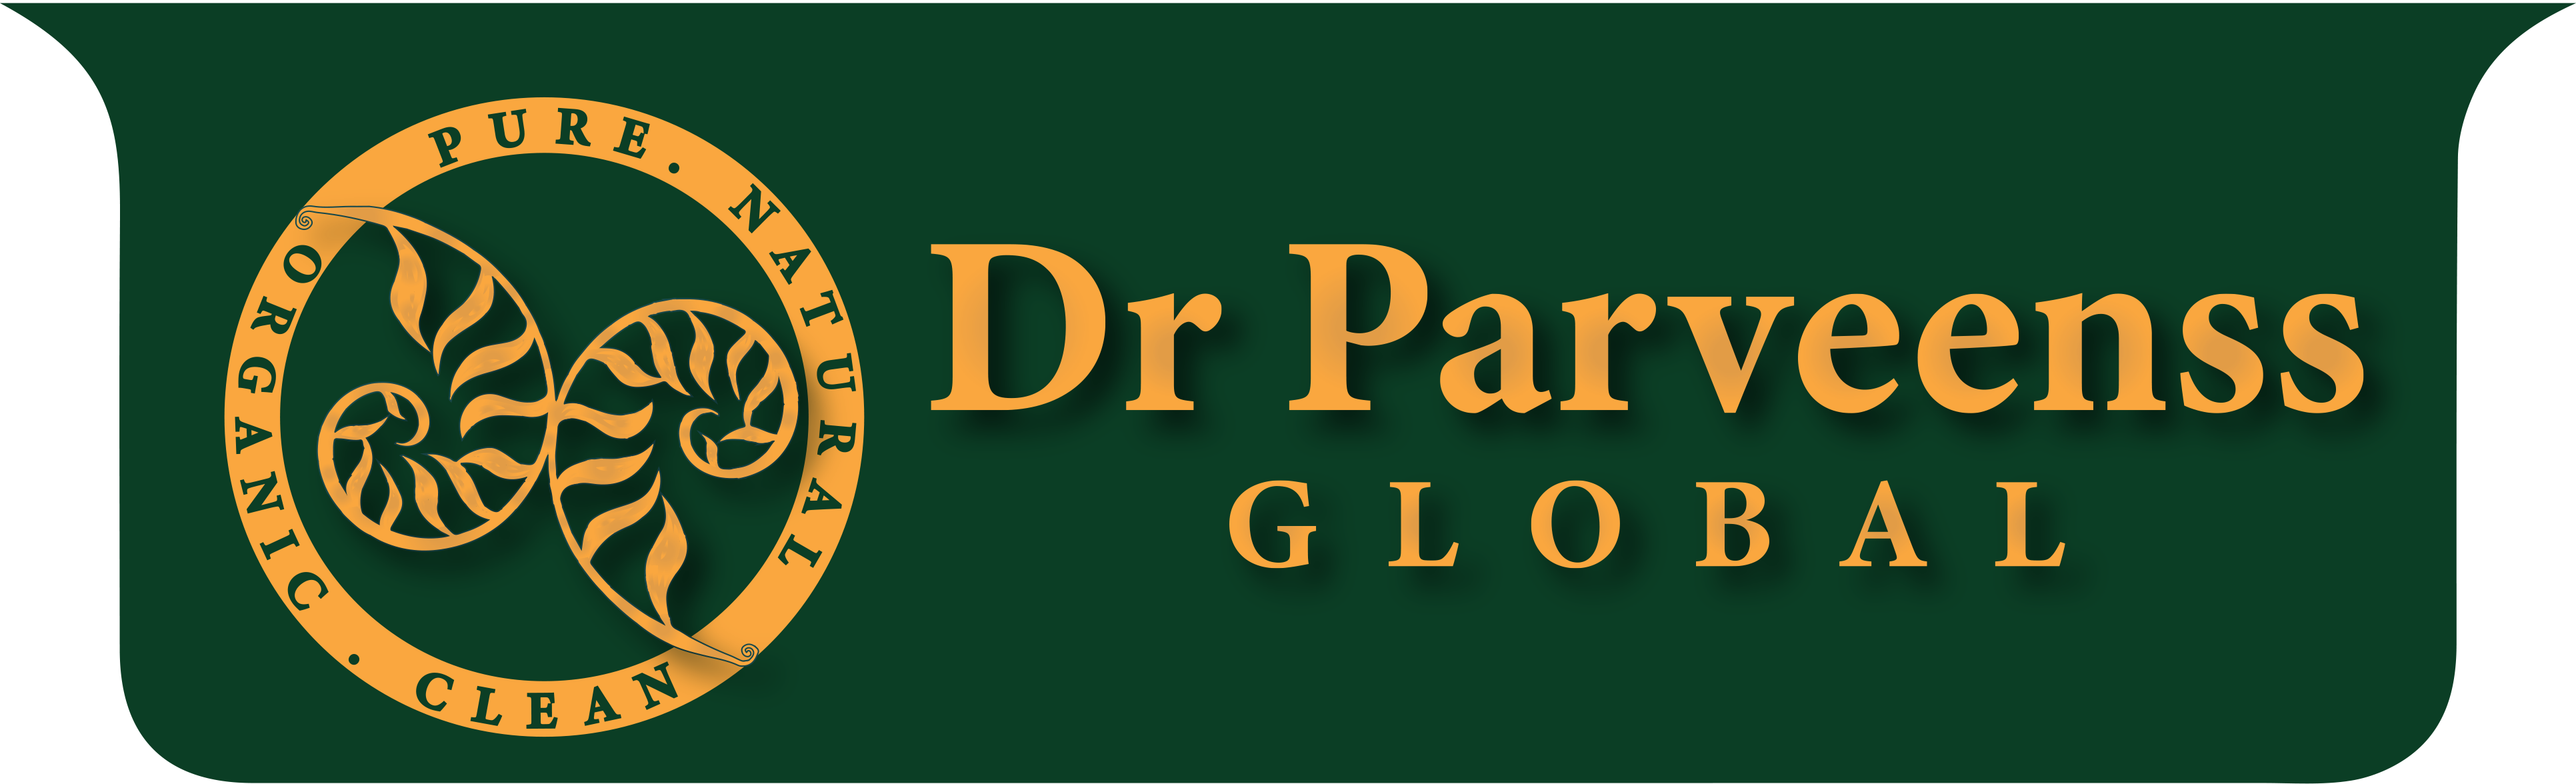 Dr Parveenss Global